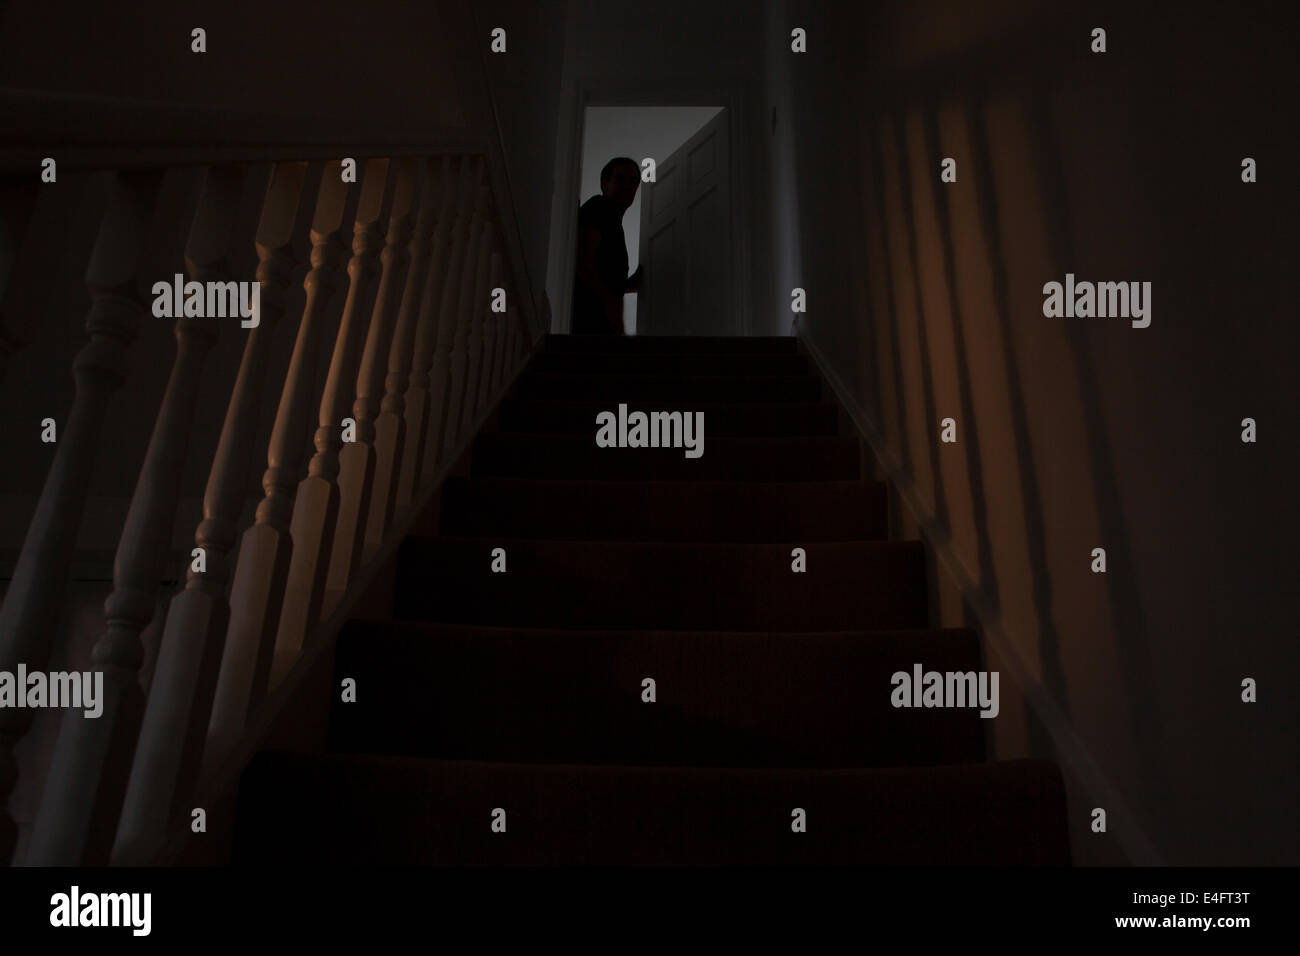 Silhouette eines Mannes Blick aus einem Zimmer am oberen Rand der Treppe, die Tür ist leicht geöffnet. Finden Sie ähnliche Bilder. Stockfoto